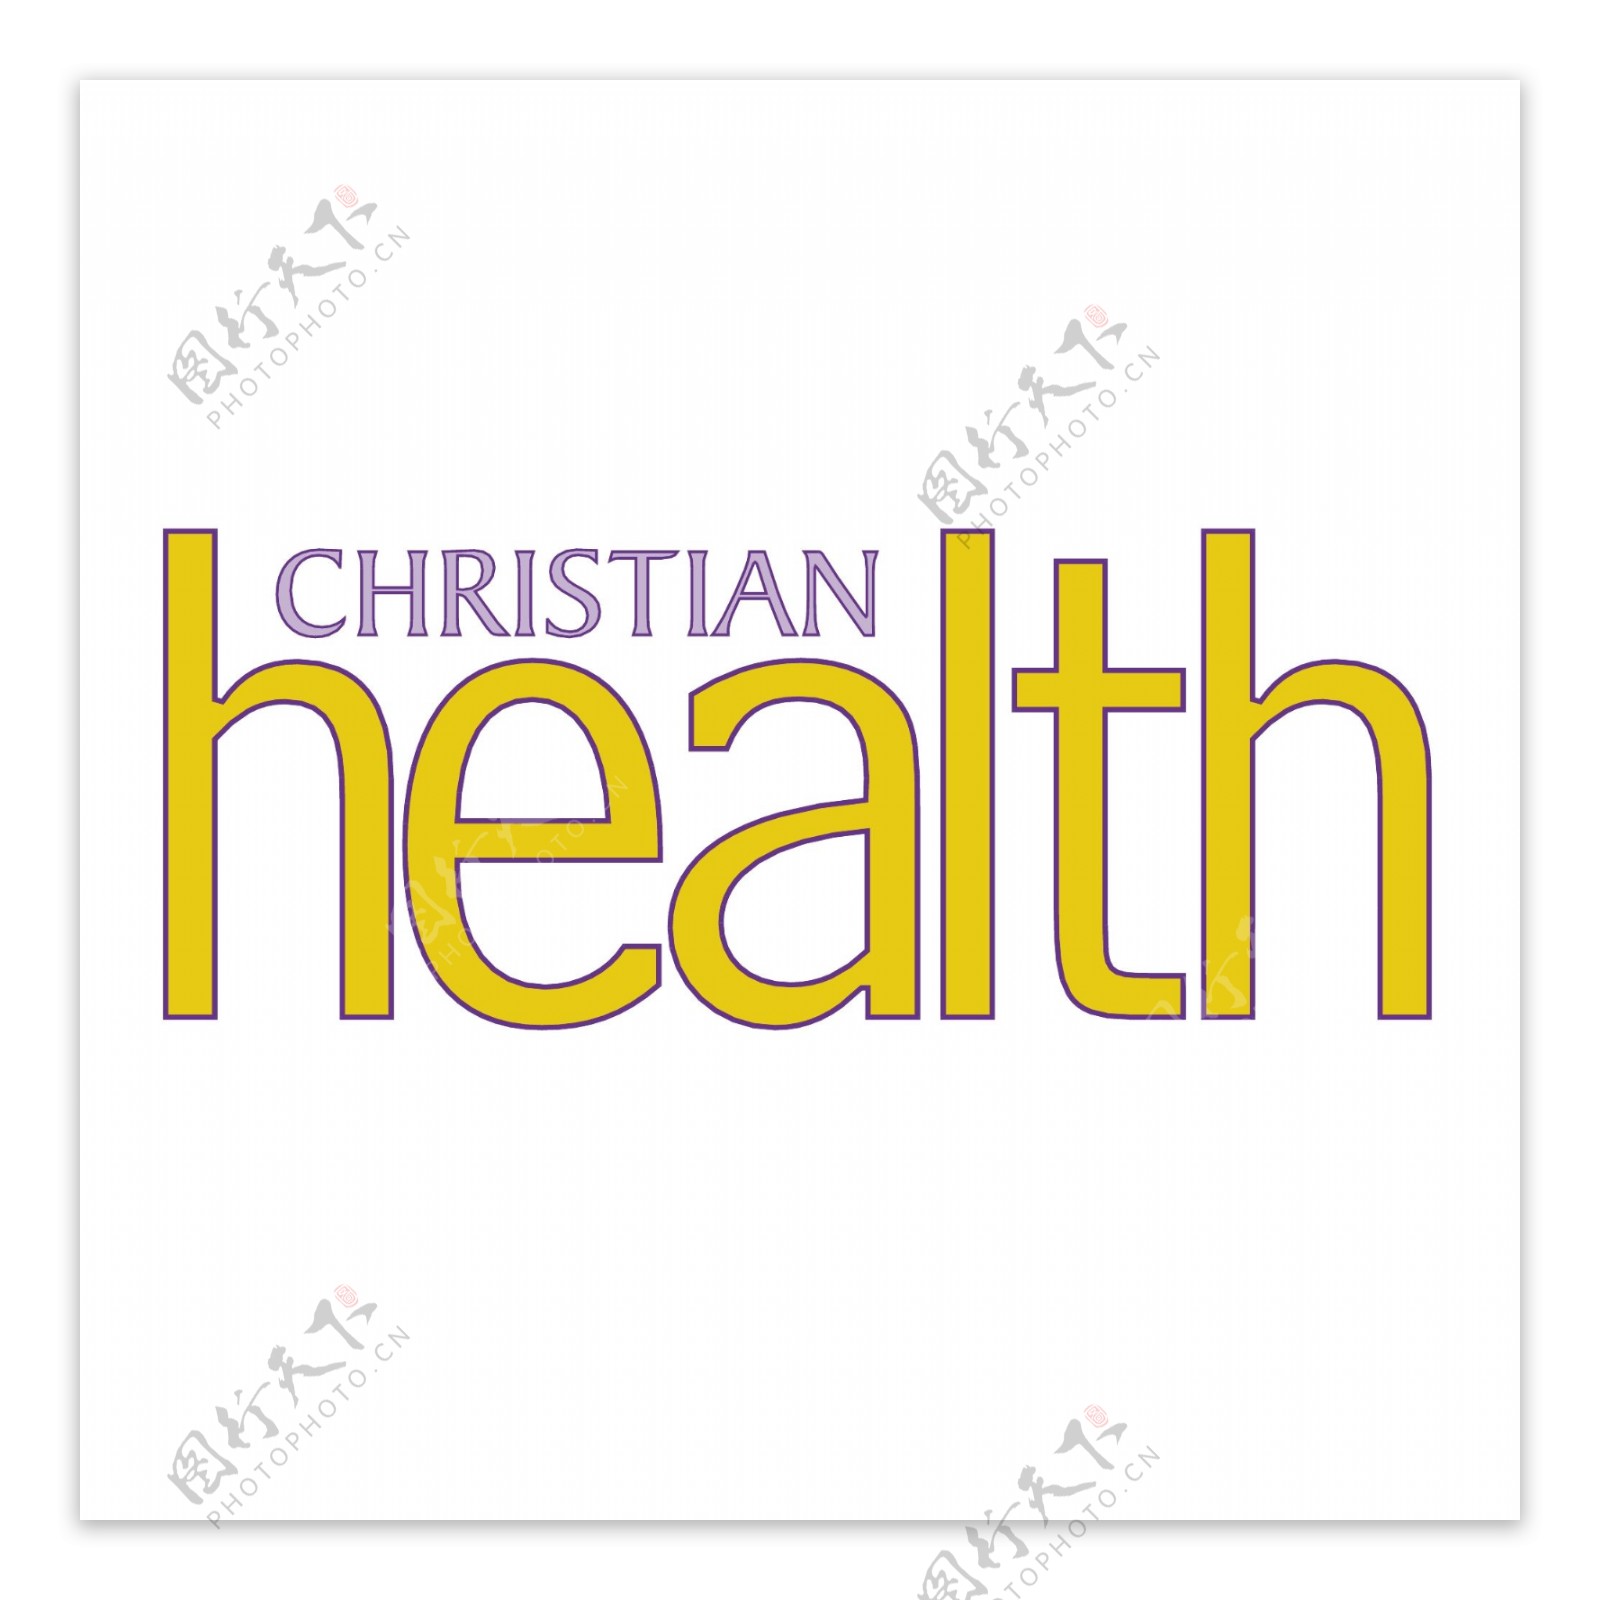 基督教的健康